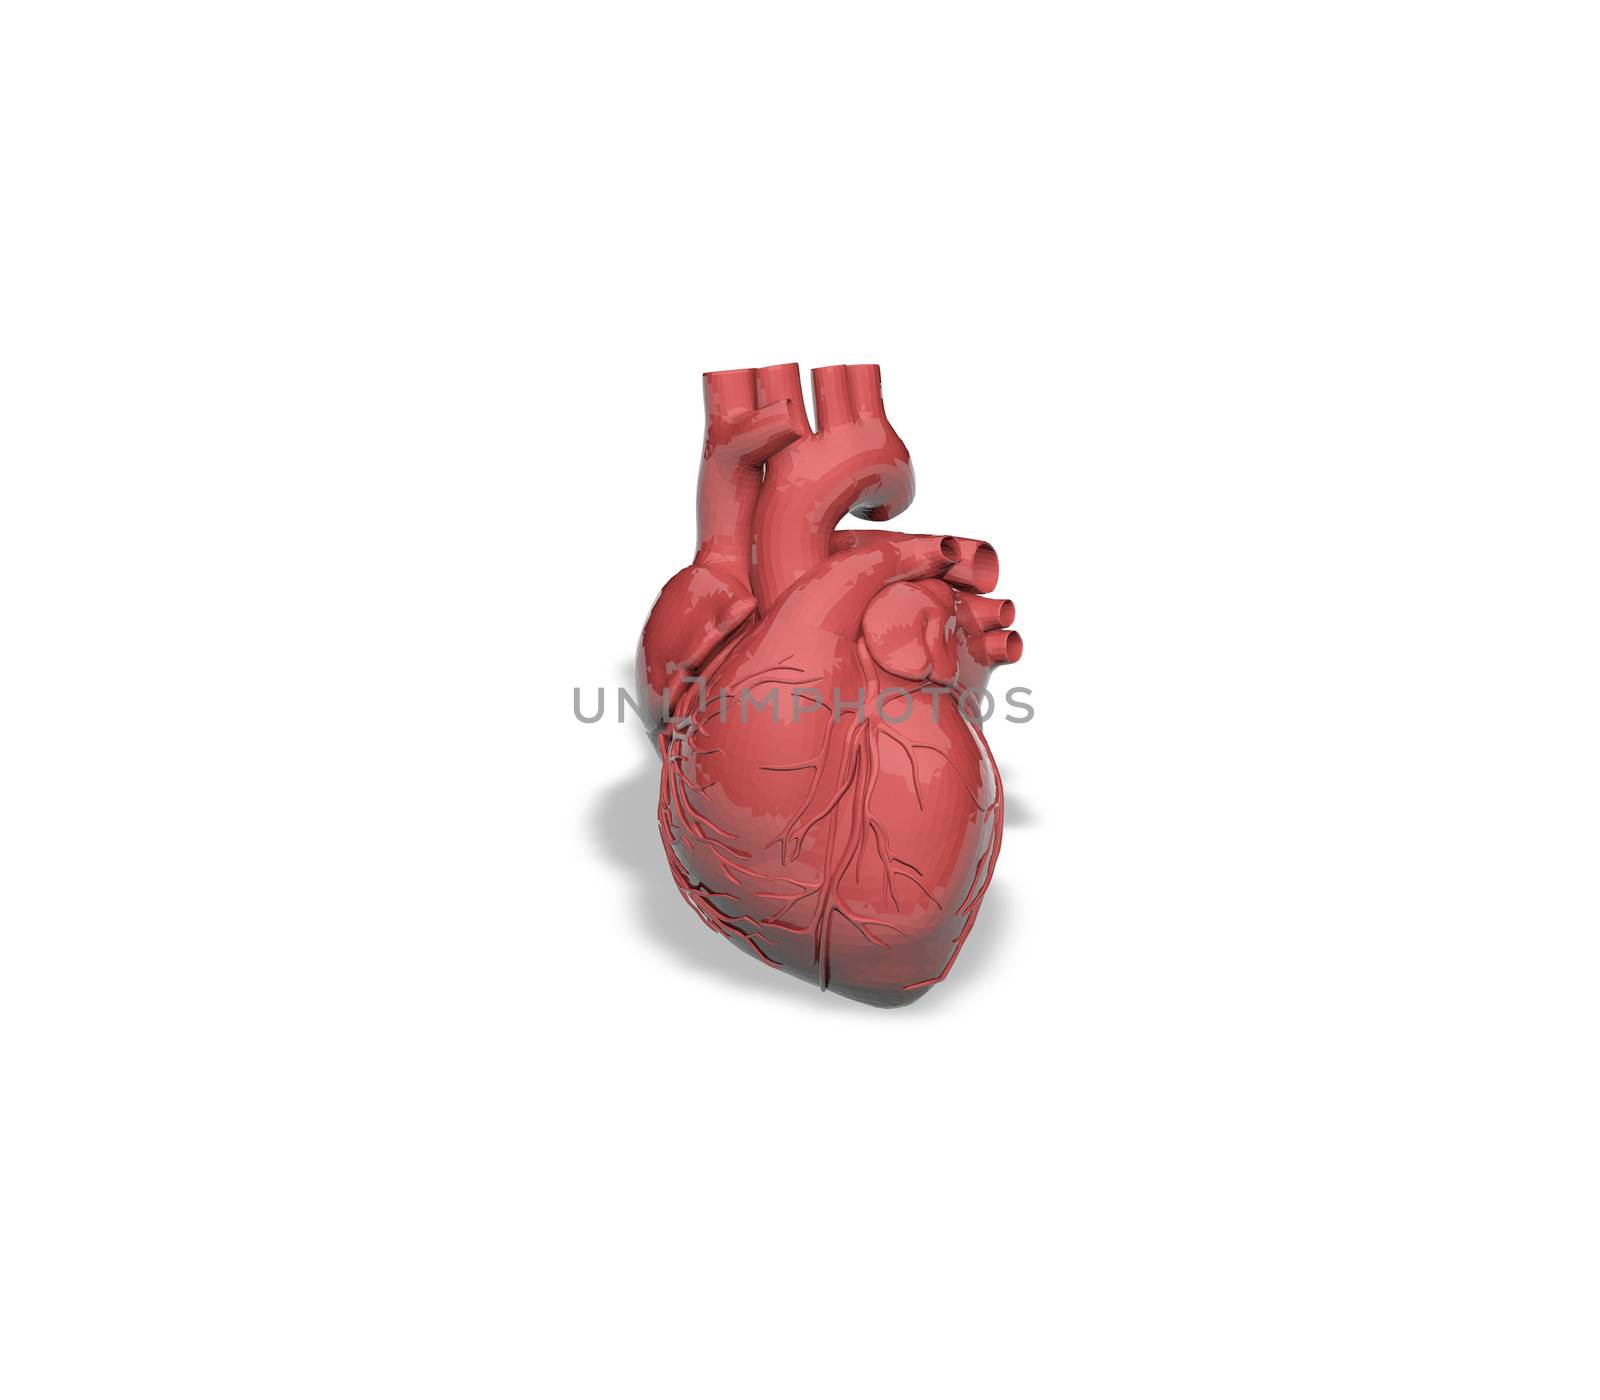 Human Heart by xizang